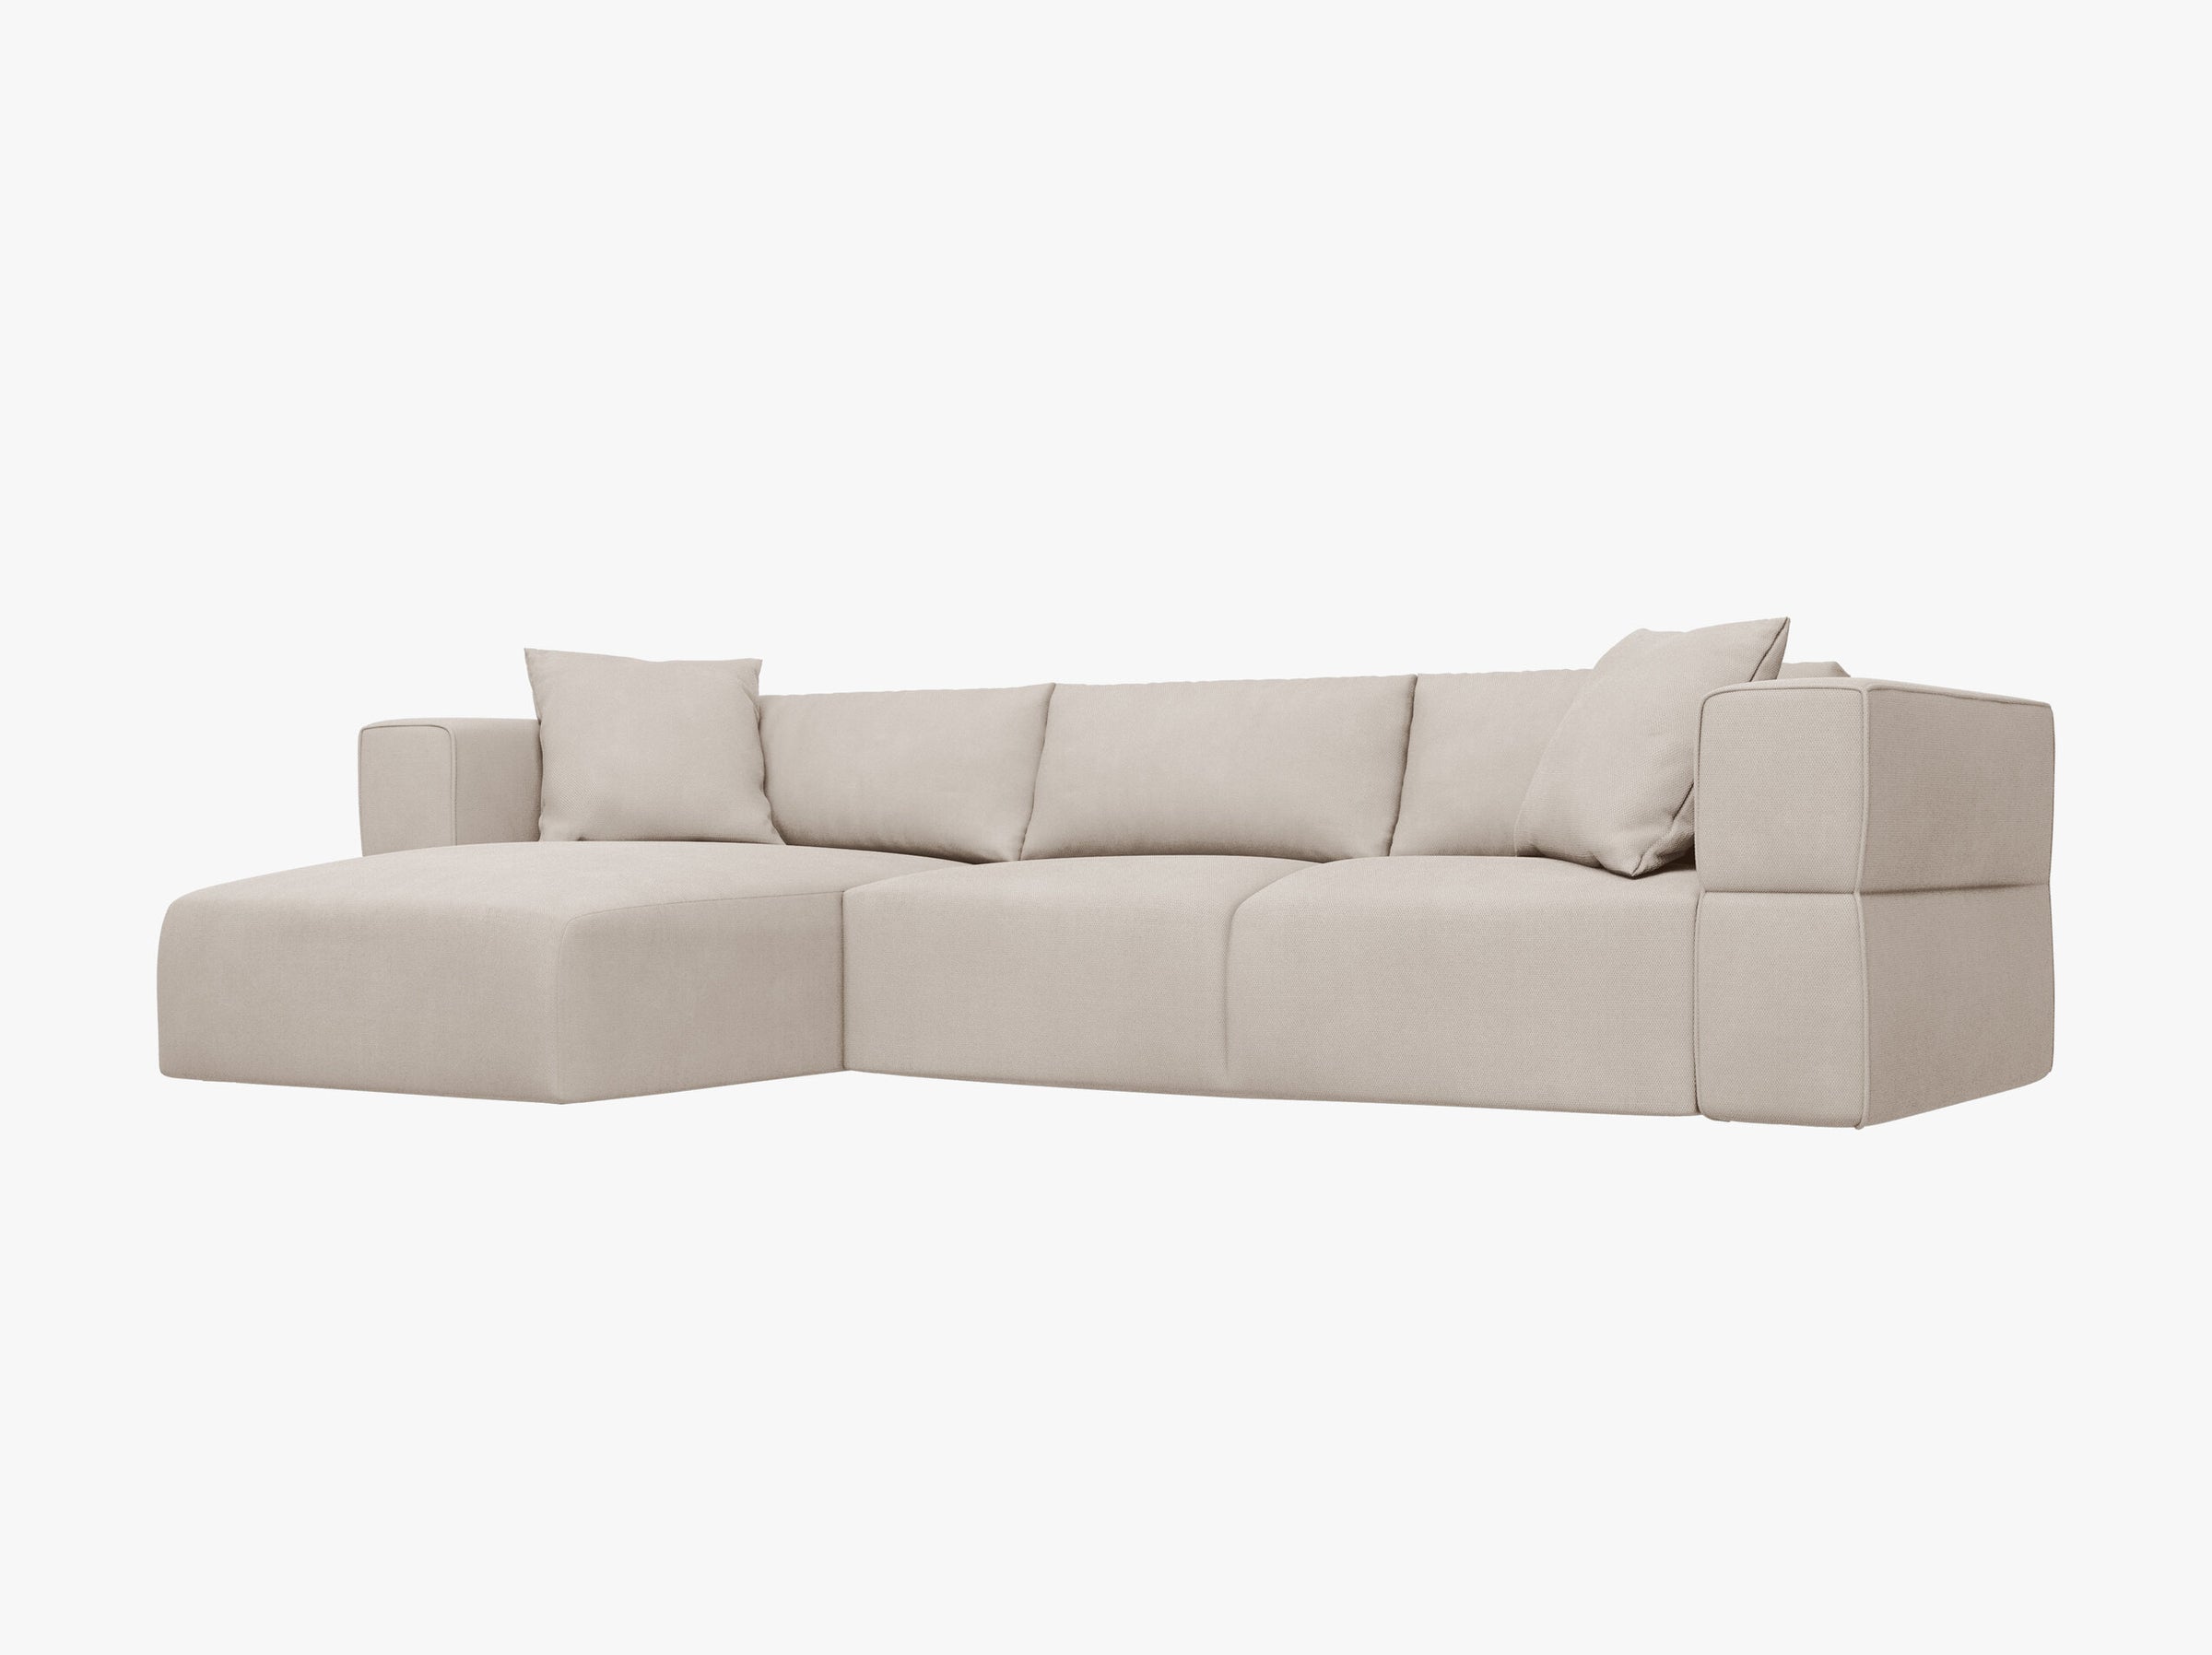 Tyra sofás tejido estructurado beige